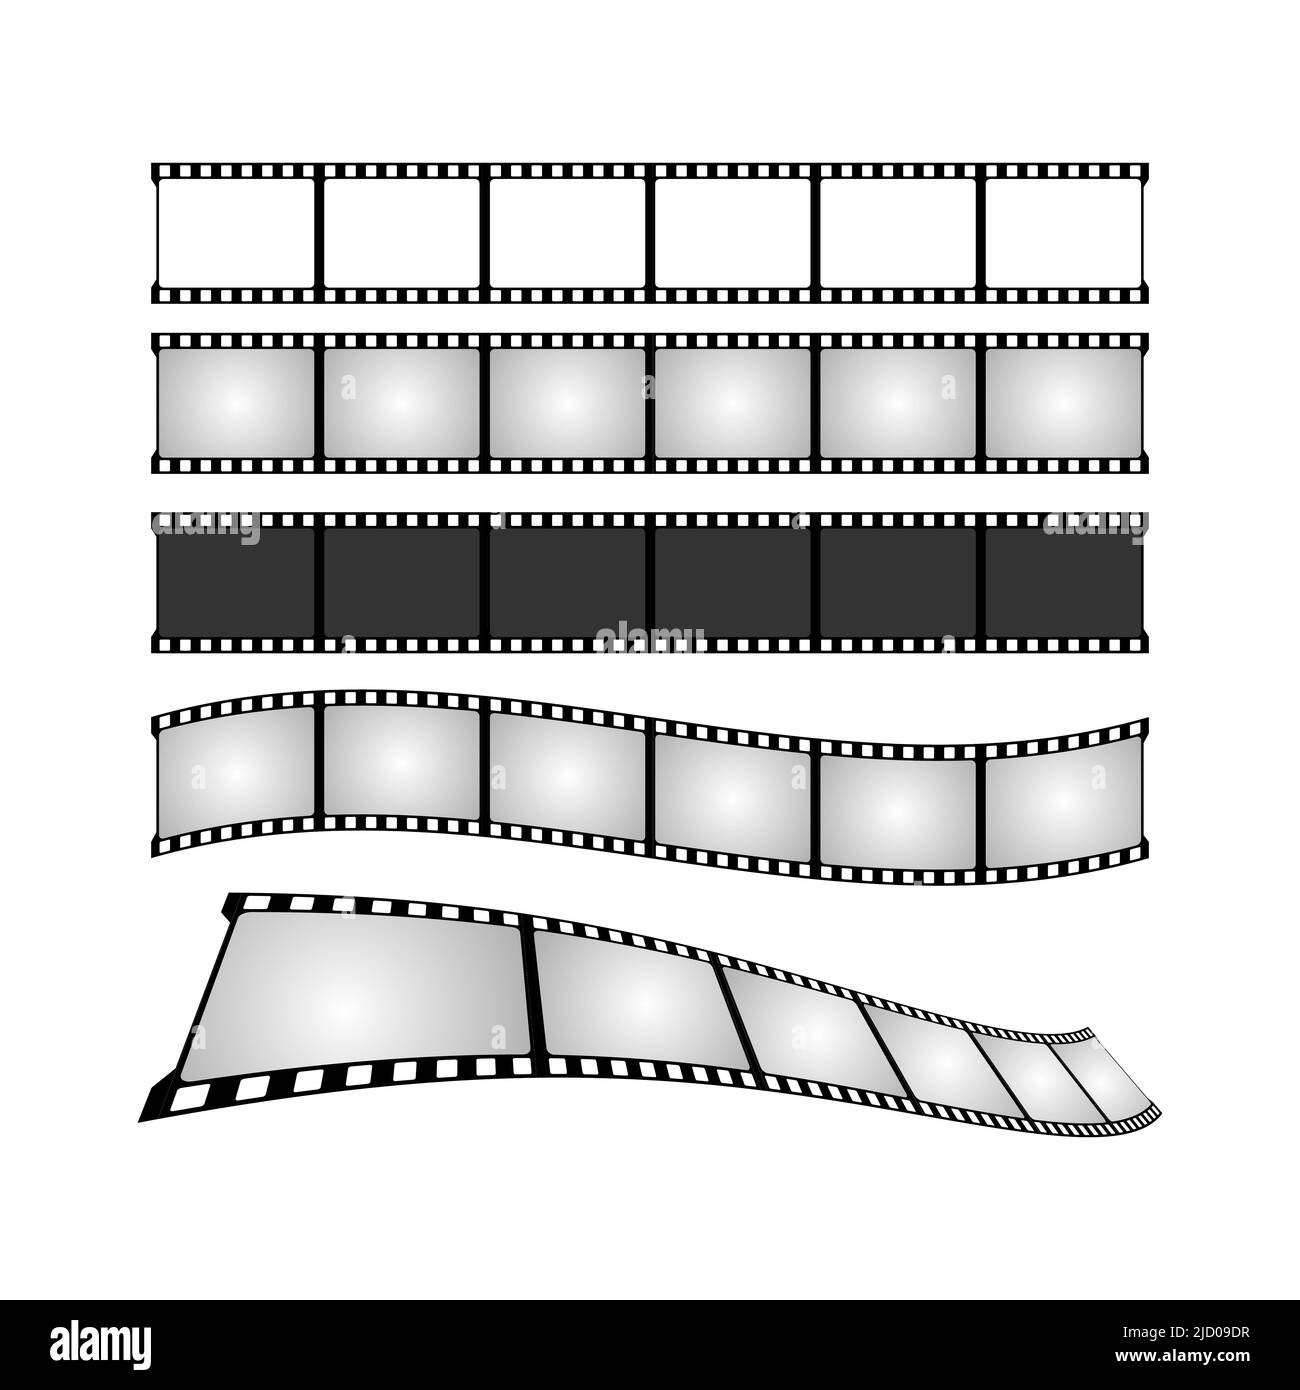 Movie tape set illustration. Cinema poster concept. Banner design for